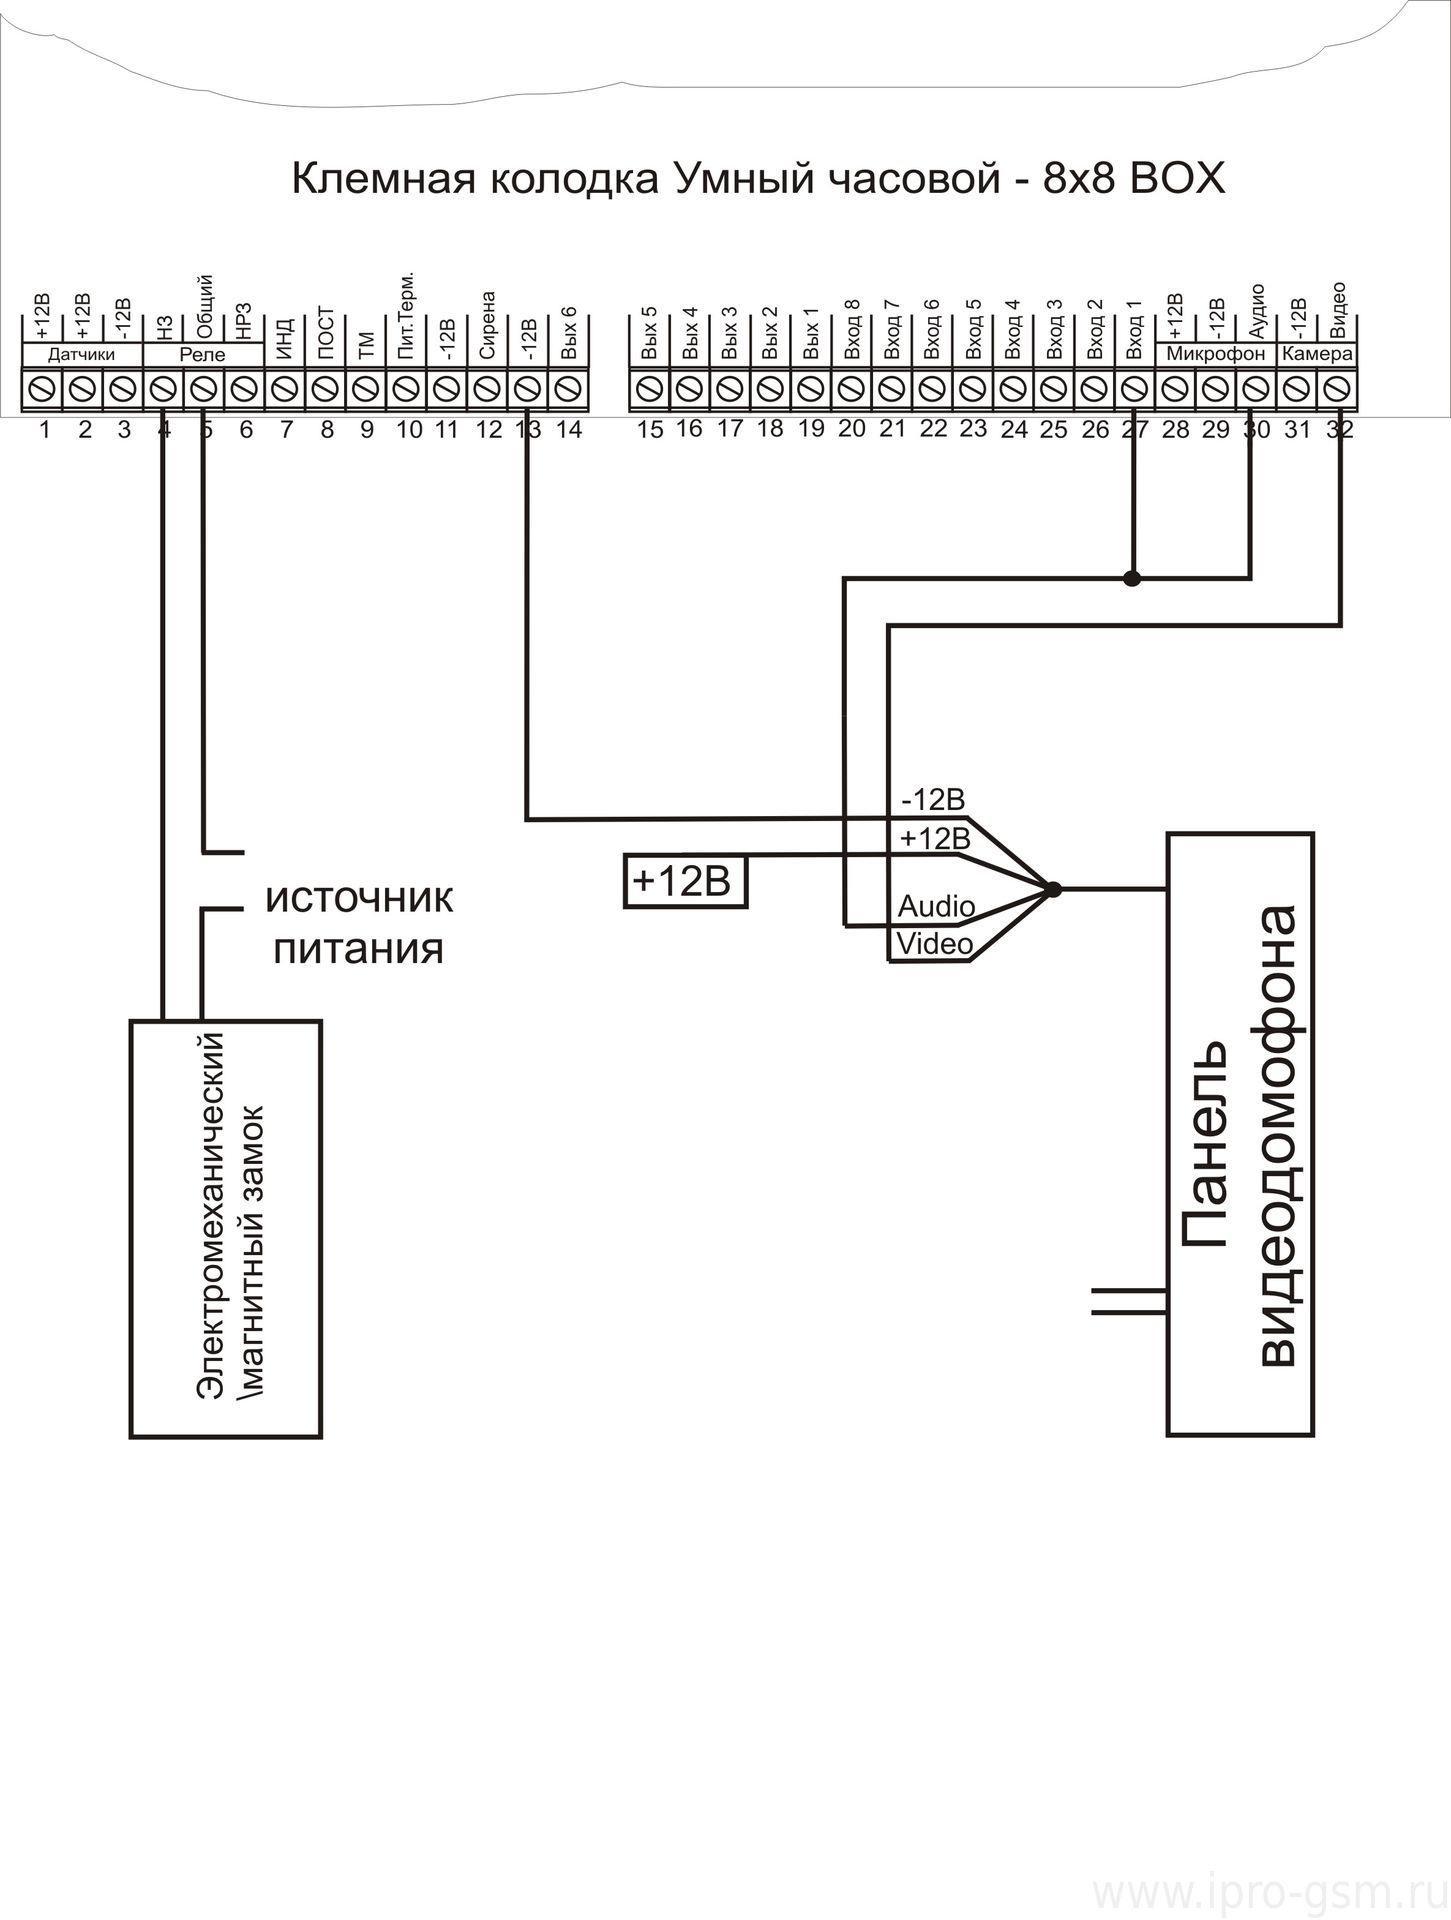 Схема подключения видеодомофона к 3G-MMS сигнализации Часовой 8х8 RF BOX